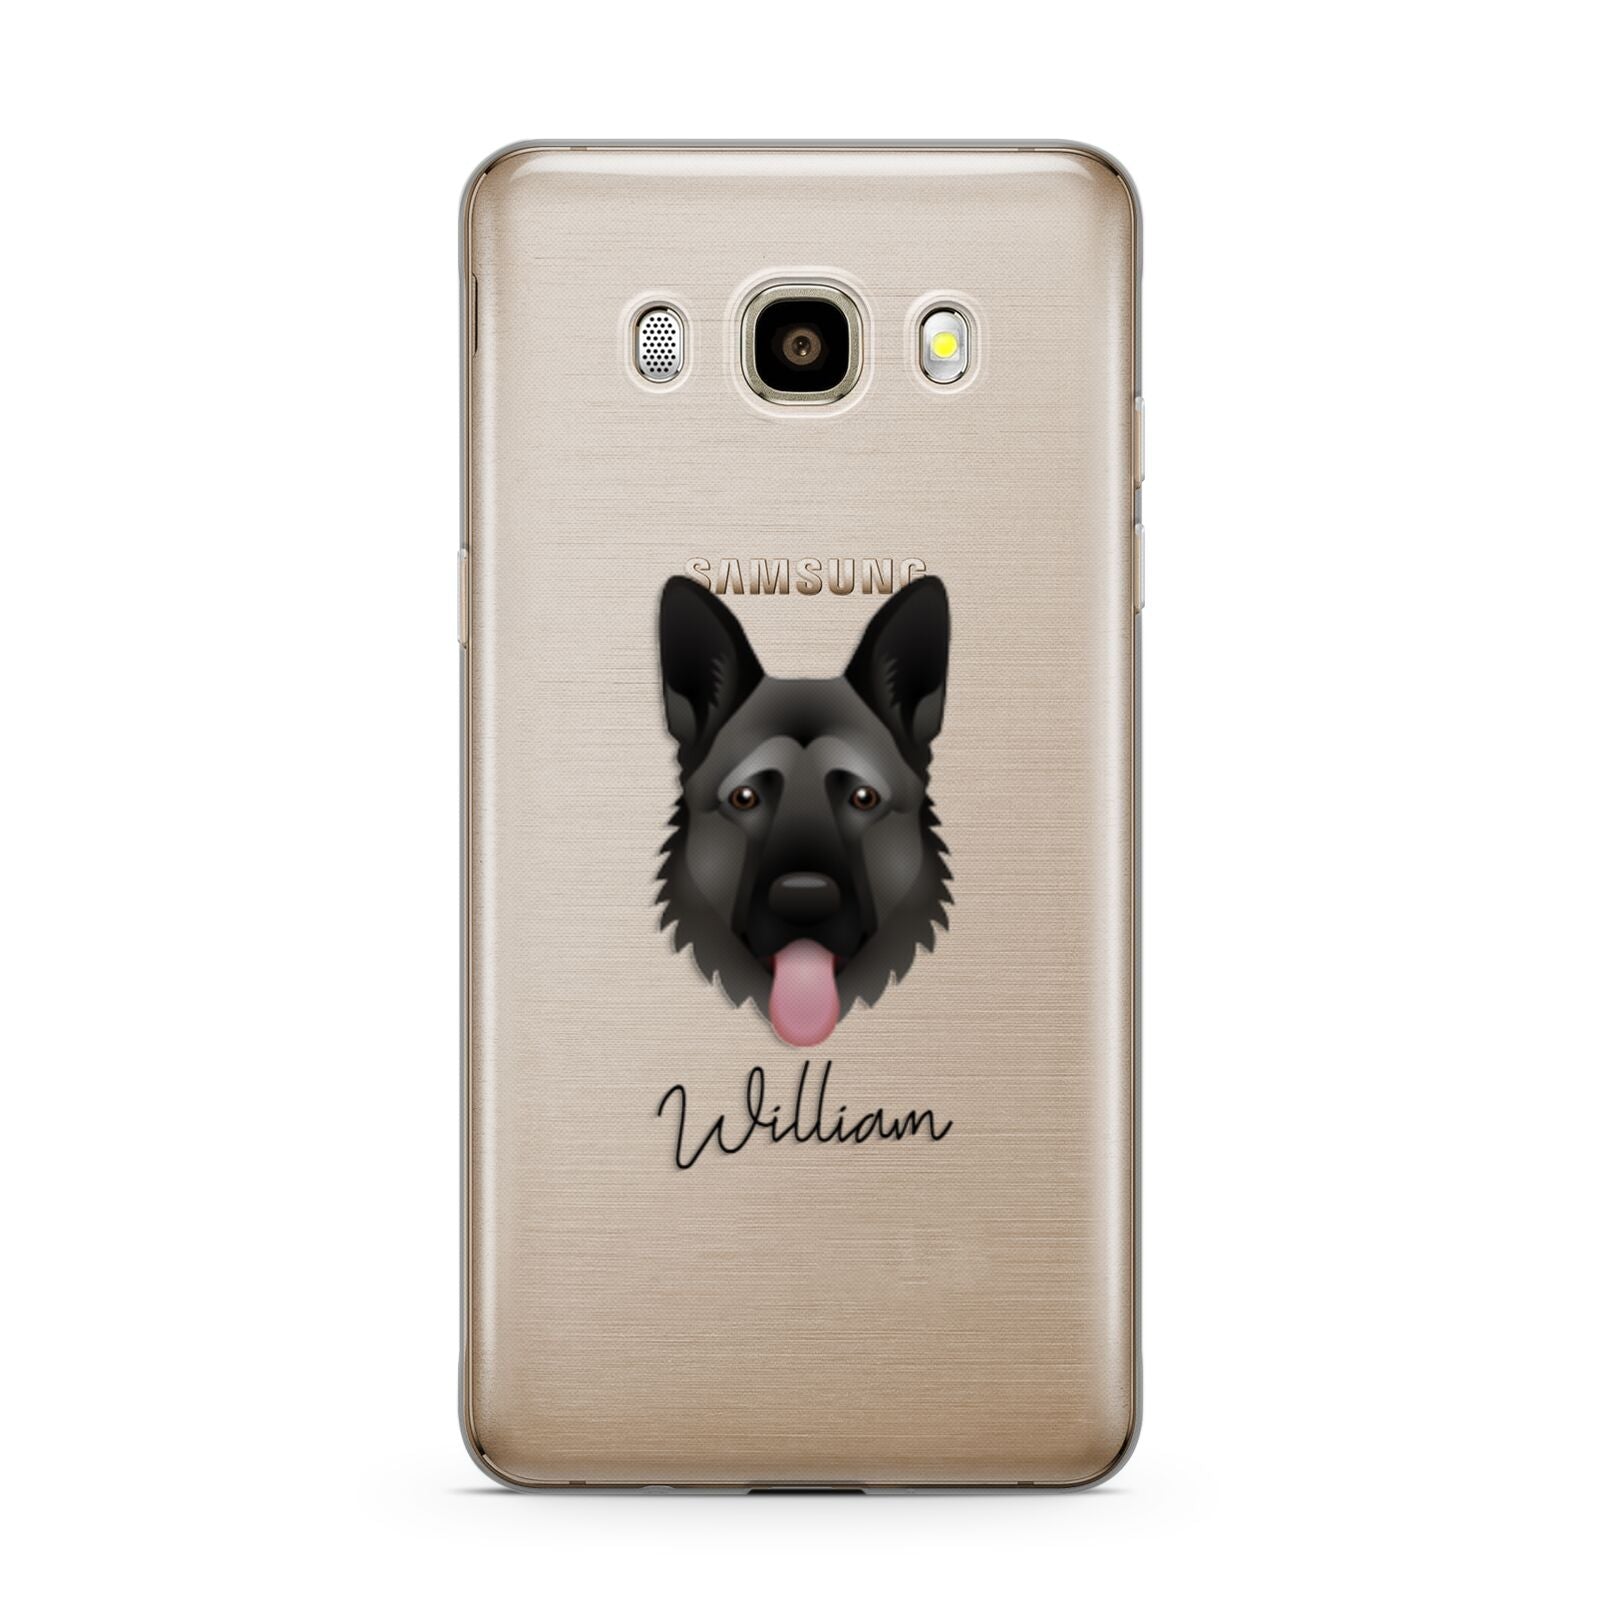 German Shepherd Personalised Samsung Galaxy J7 2016 Case on gold phone